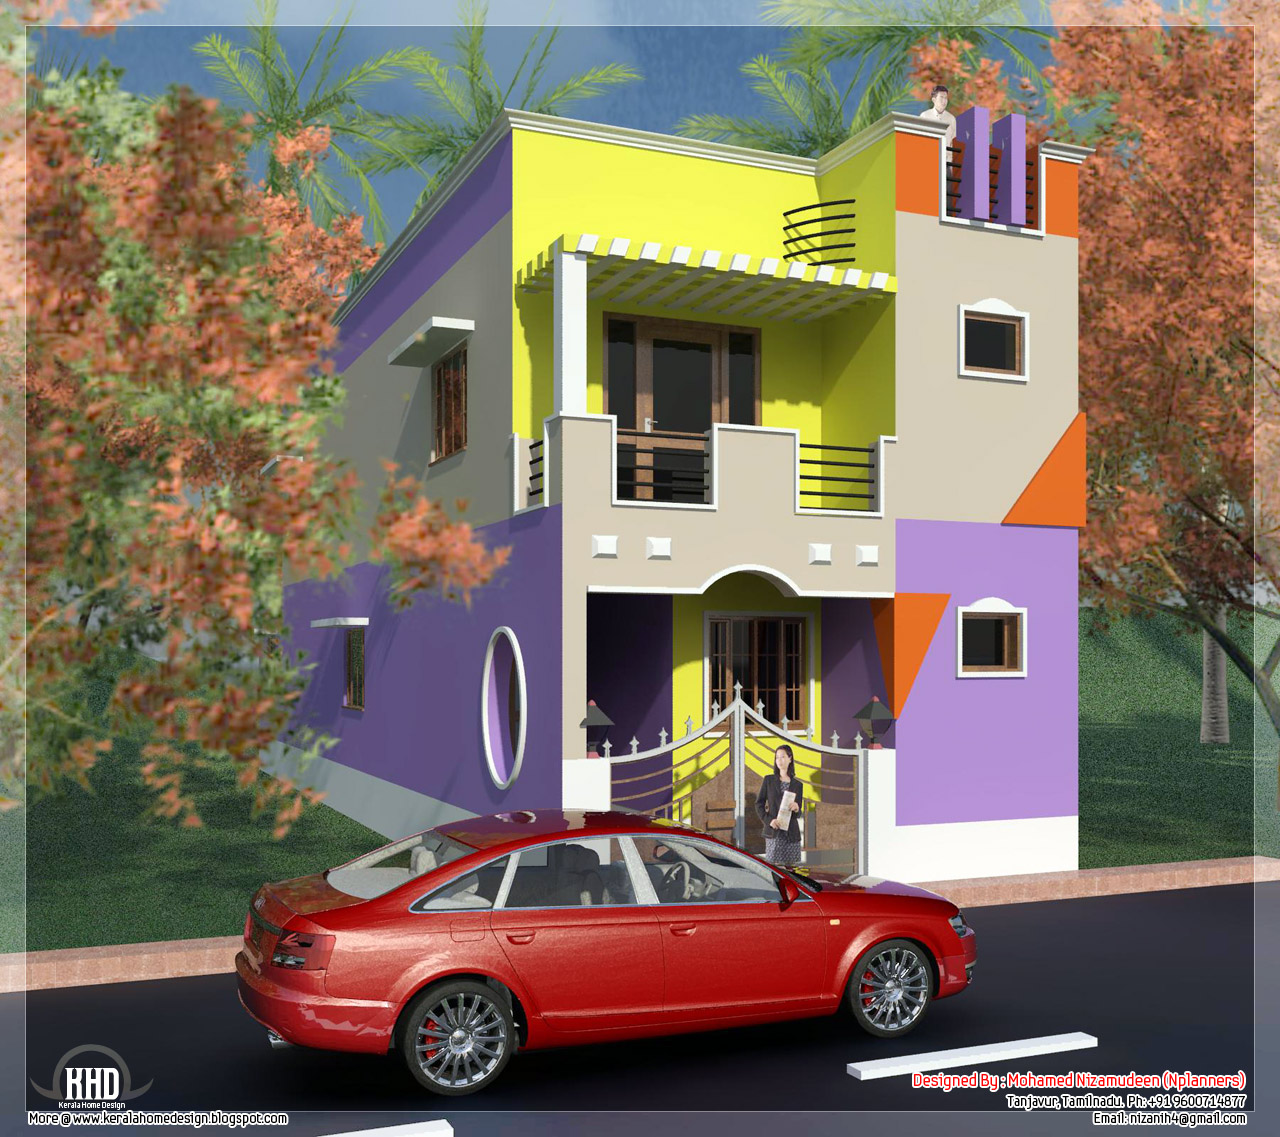  House  Models In Tamil  Nadu  Joy Studio Design Gallery 